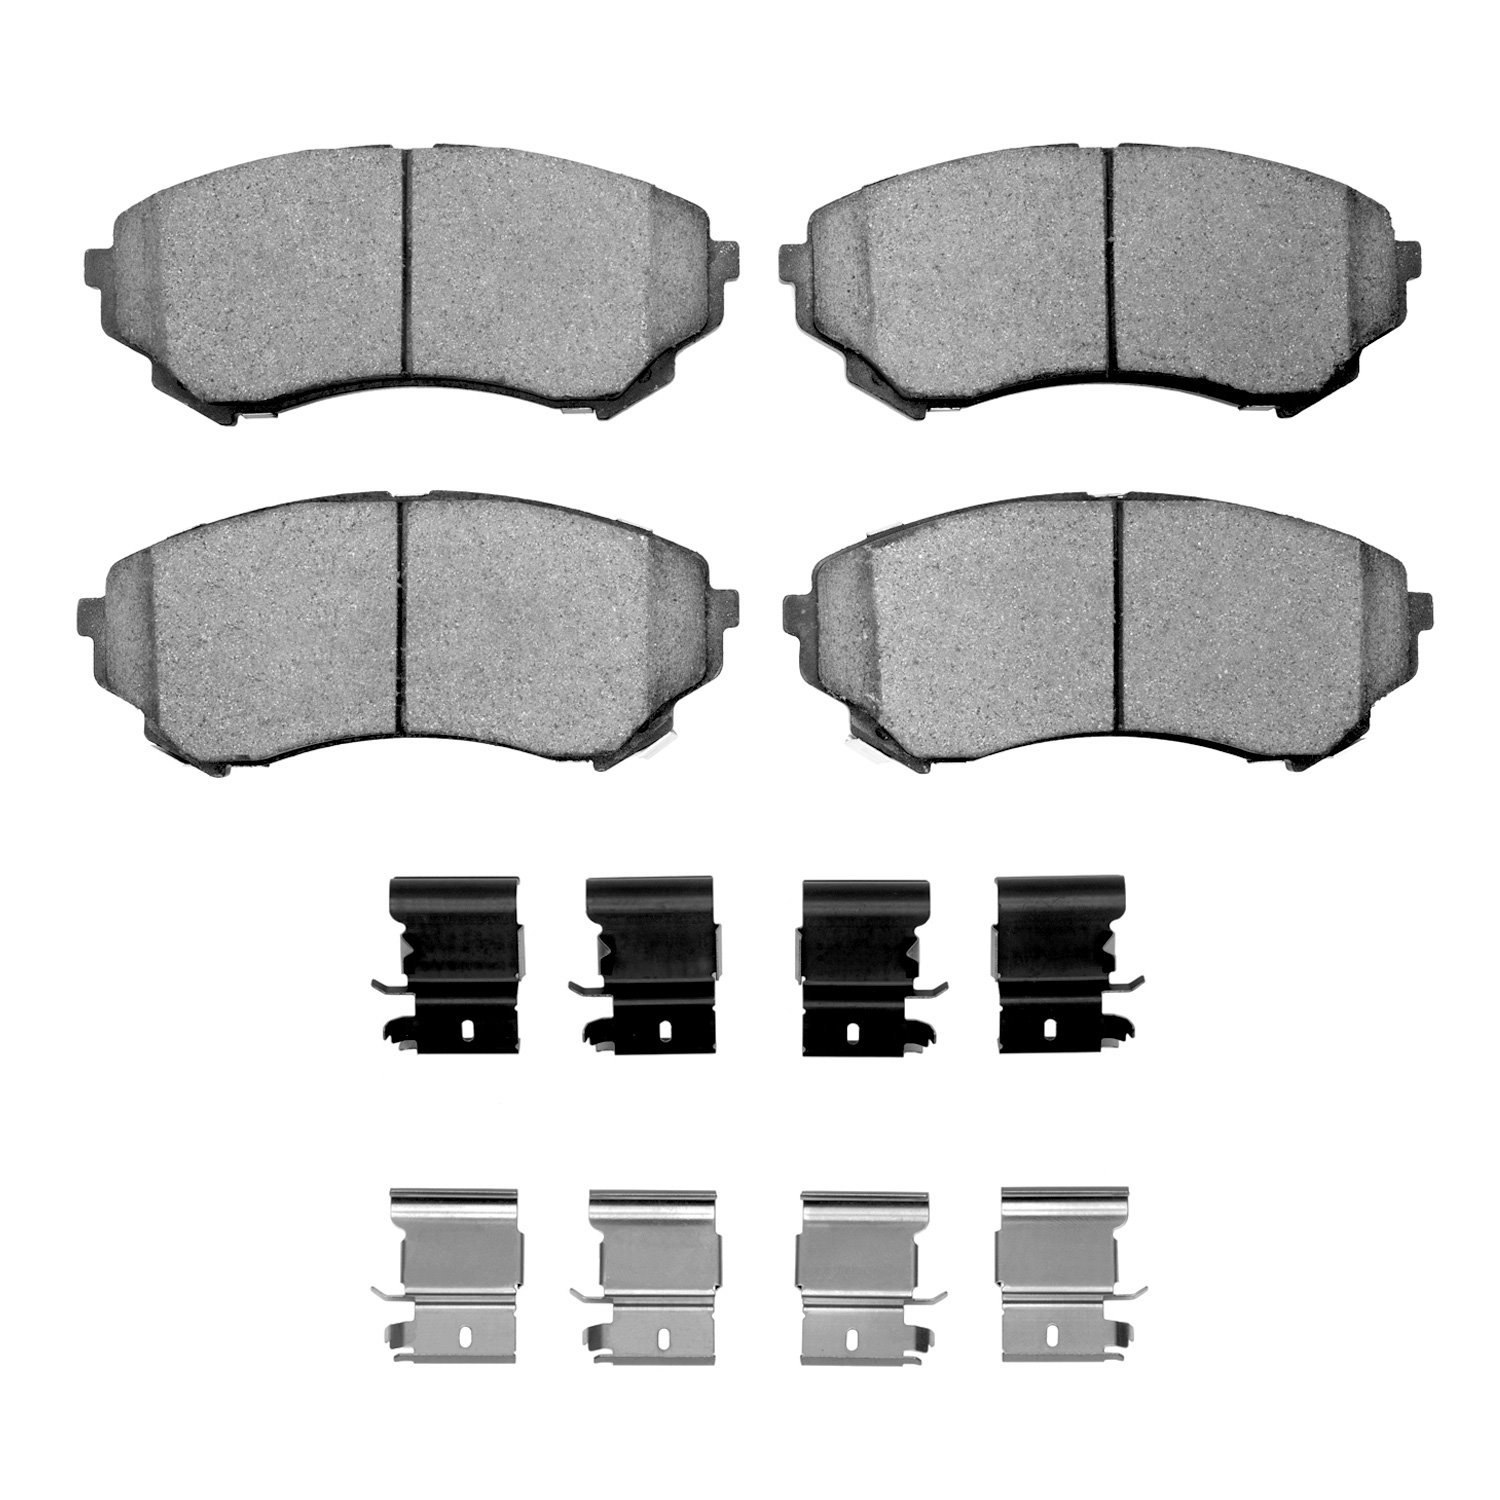 1310-1331-01 3000-Series Ceramic Brake Pads & Hardware Kit, 2008-2014 GM, Position: Front